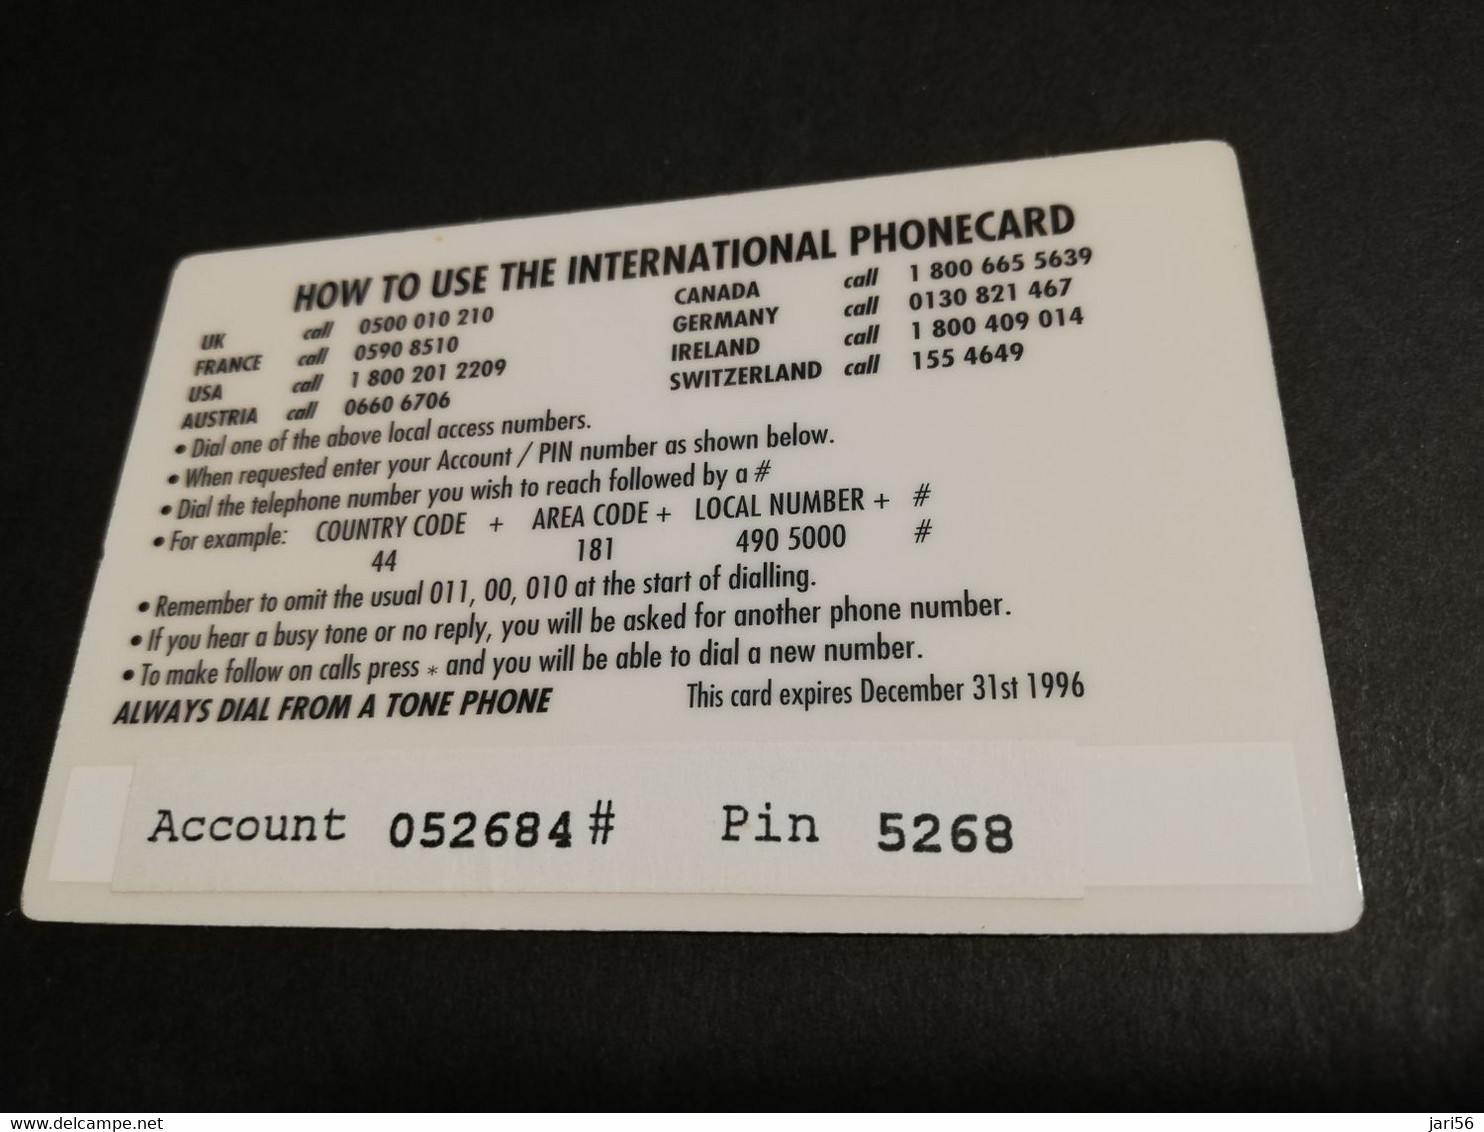 GREAT BRITAIN   3 POUND  AIR PLANES  B-17   DIT PHONECARD    PREPAID CARD      **5917** - [10] Sammlungen